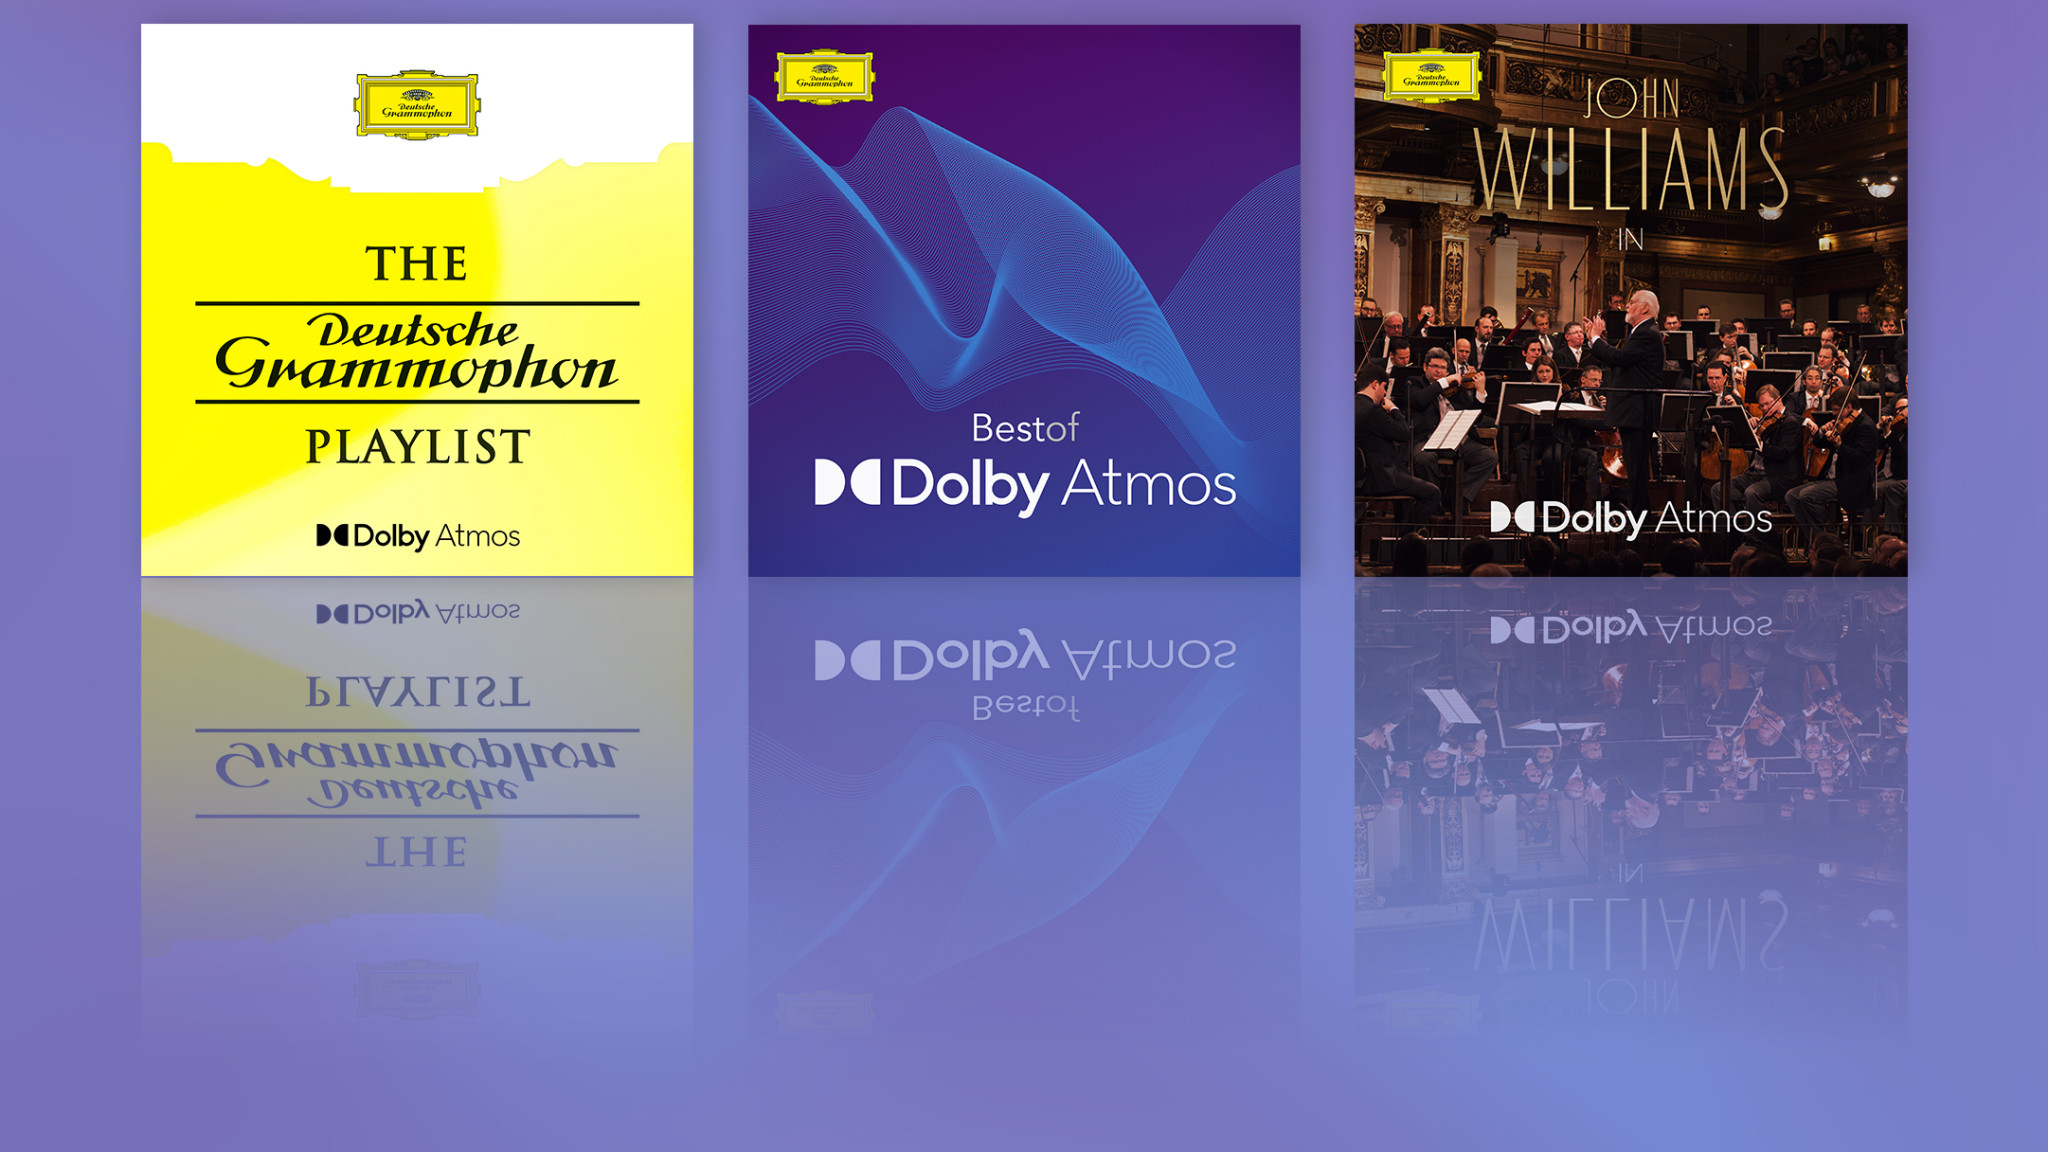 Apple Music Spatial Audio - Drei Wiedergabelisten präsentieren das Beste von DG in Dolby Atmos®